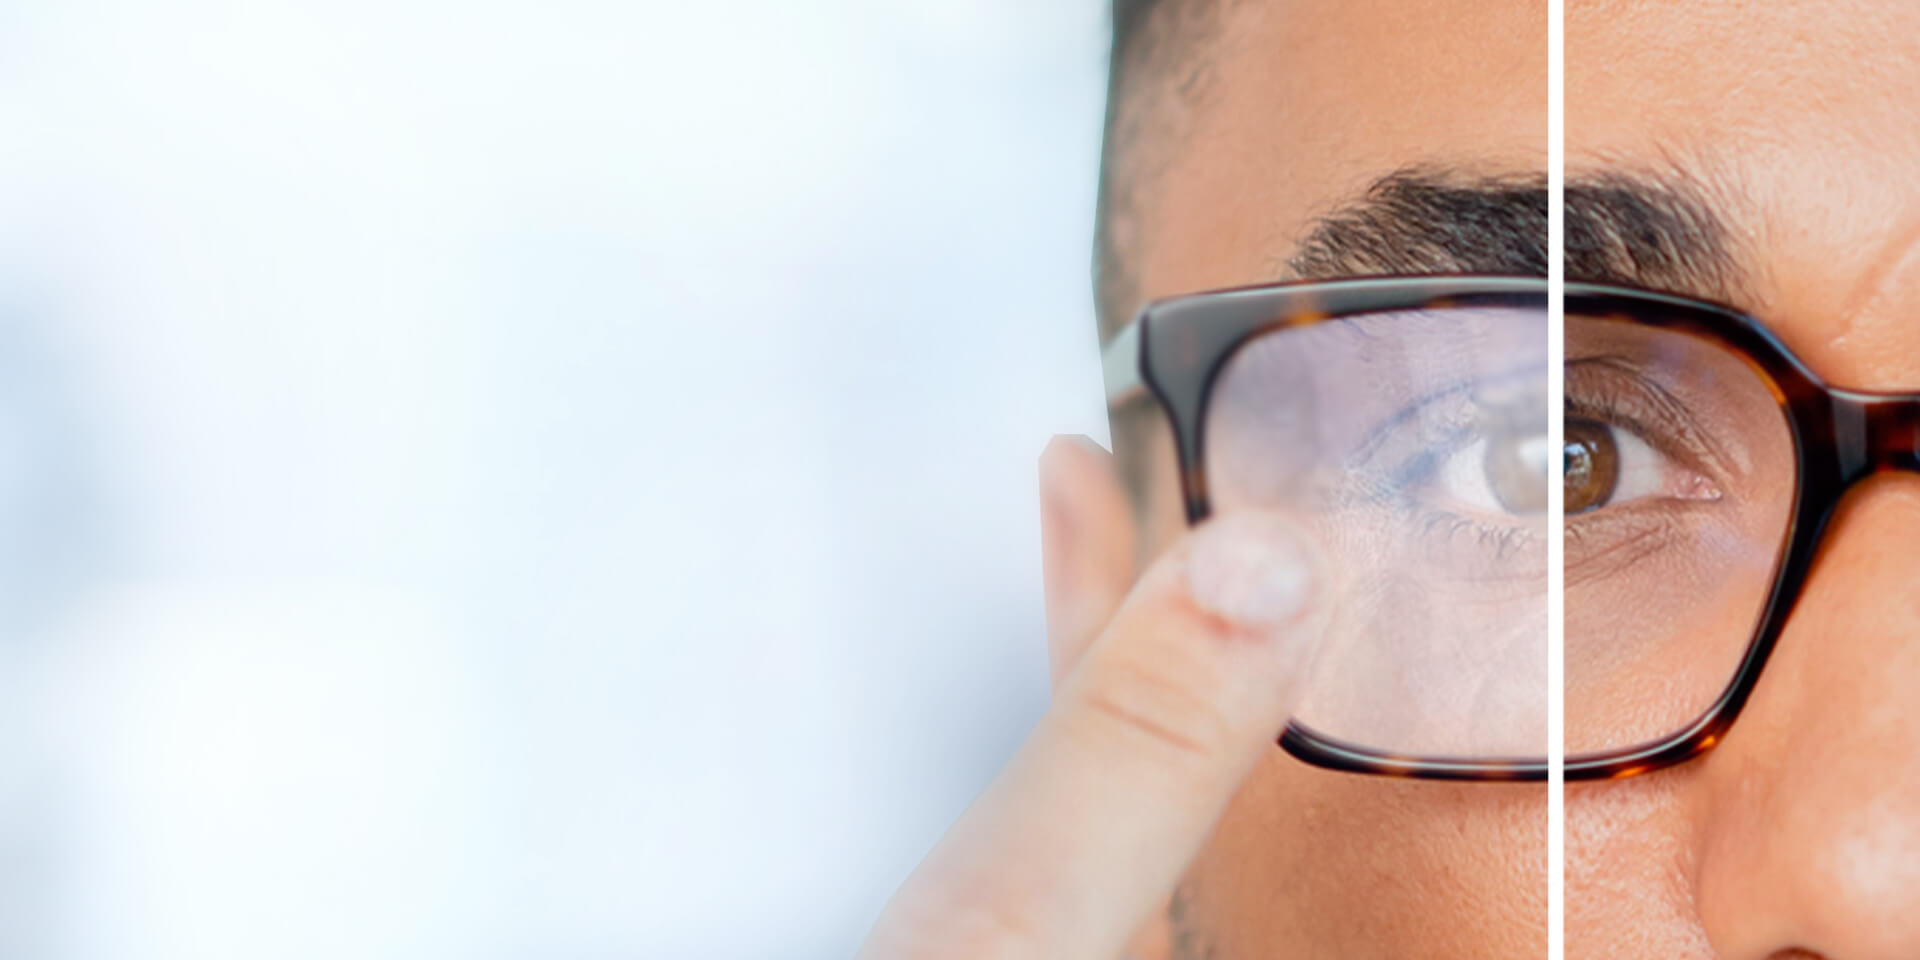 Mențineți lentilele clienților dvs. curate și fără aburire.